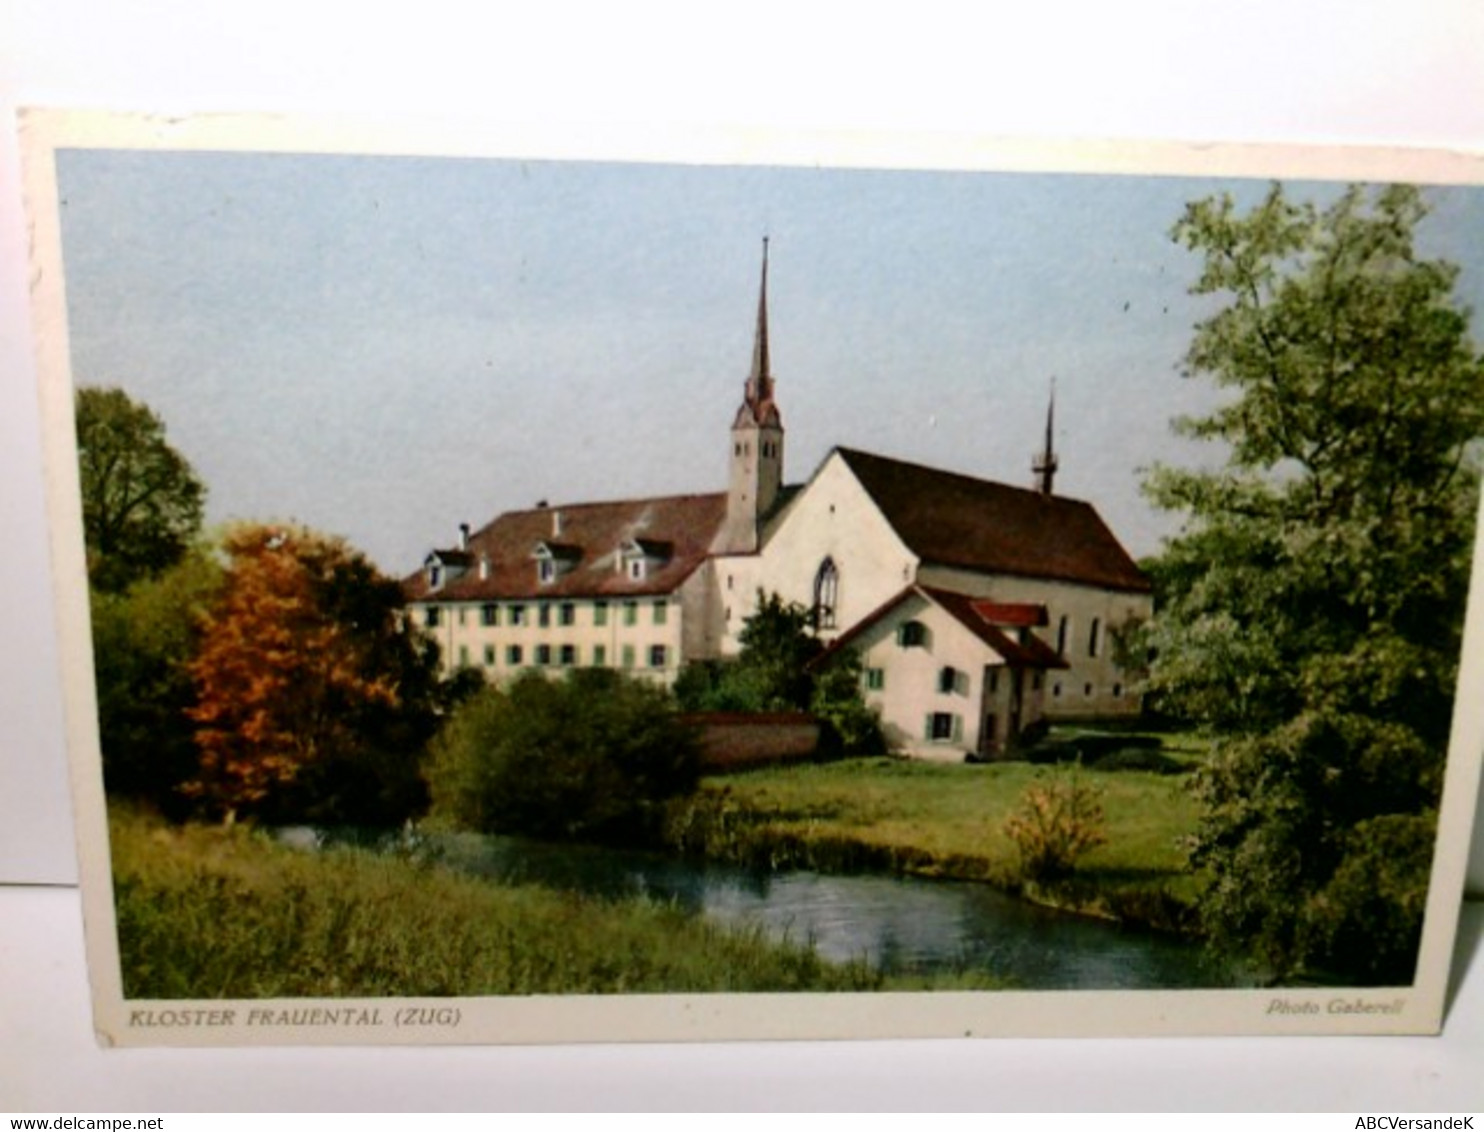 Kloster Frauenthal. Zug. Schweiz. Alte Ansichtskarte / Postkarte Farbig, Ungel. Alter O. A. Blick über Bach Zu - Thal